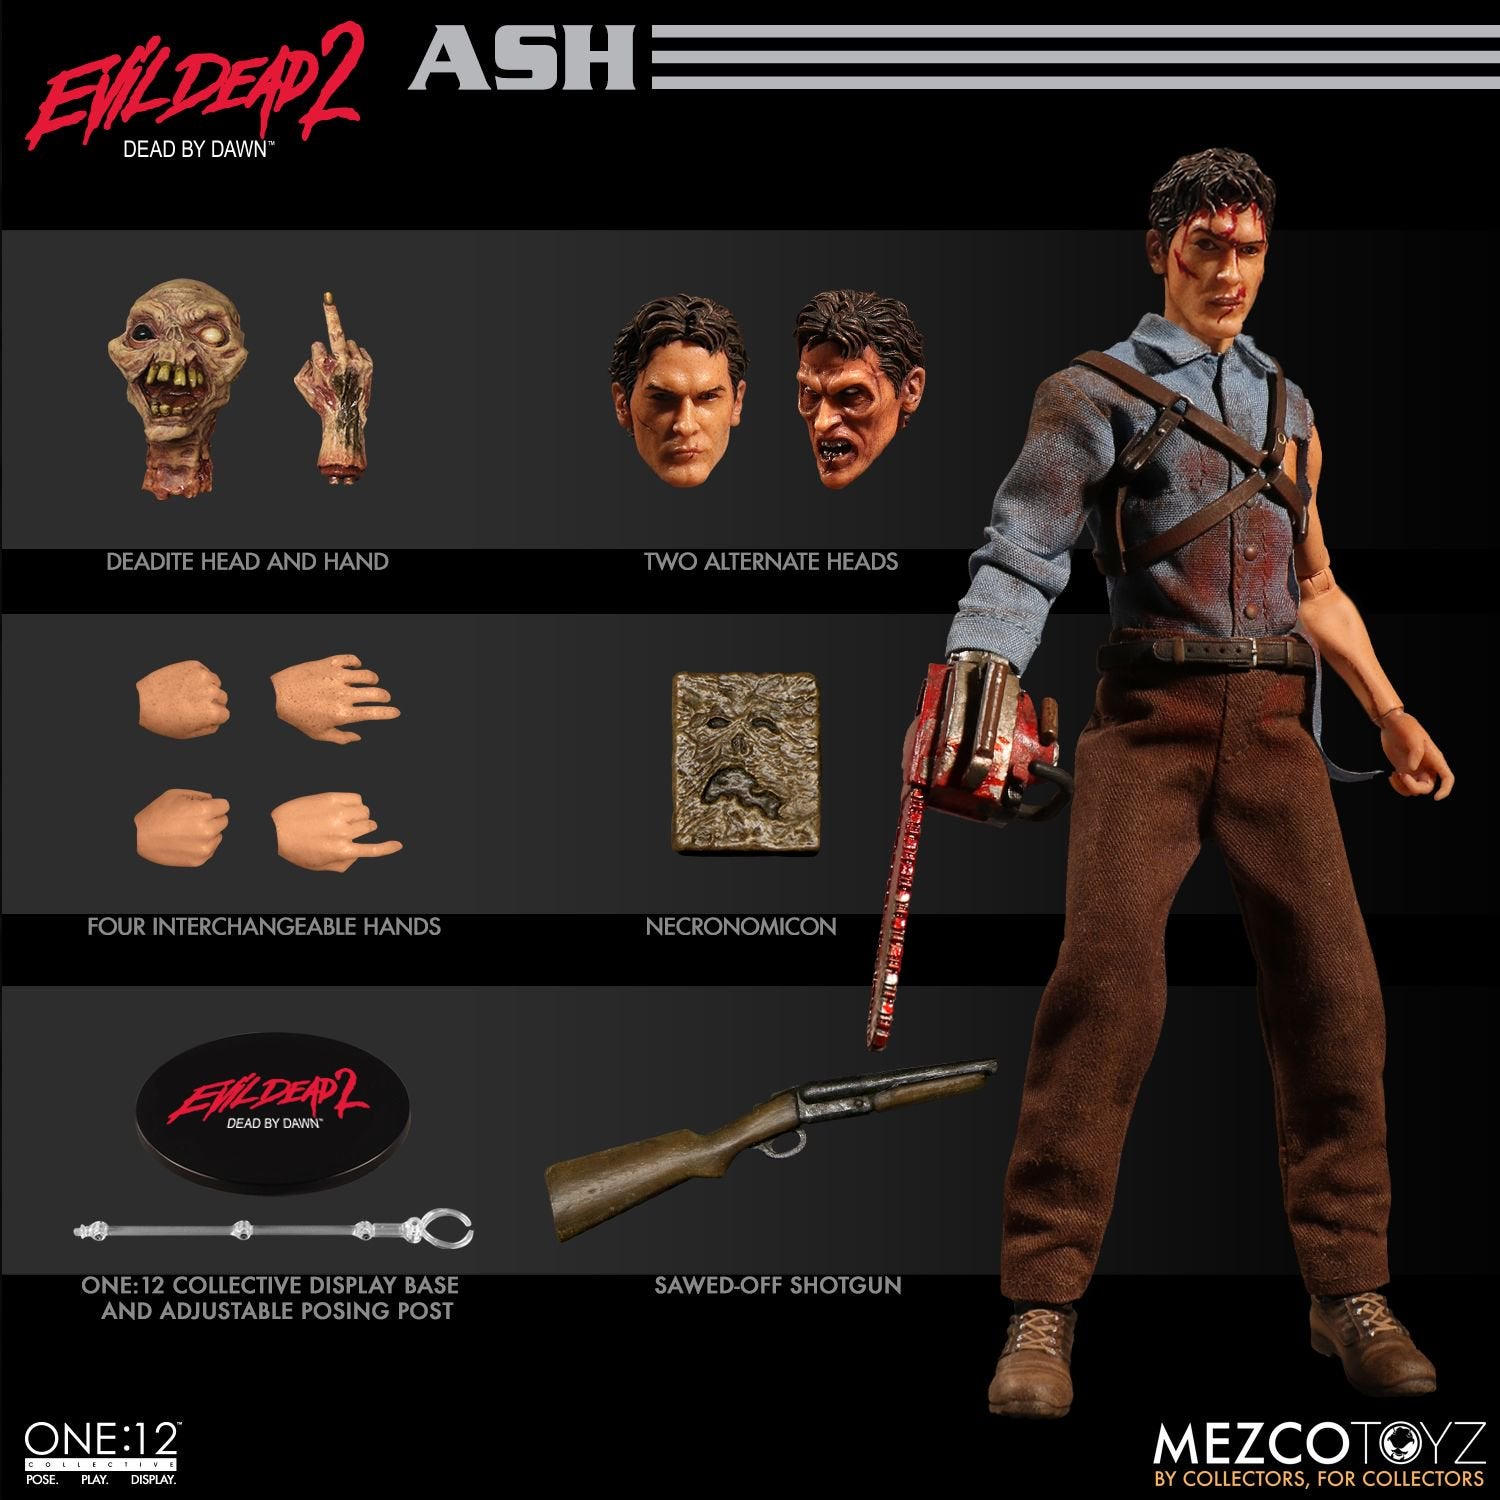 Mezco - One:12 Collective - Evil Dead 2 - Ash - Marvelous Toys